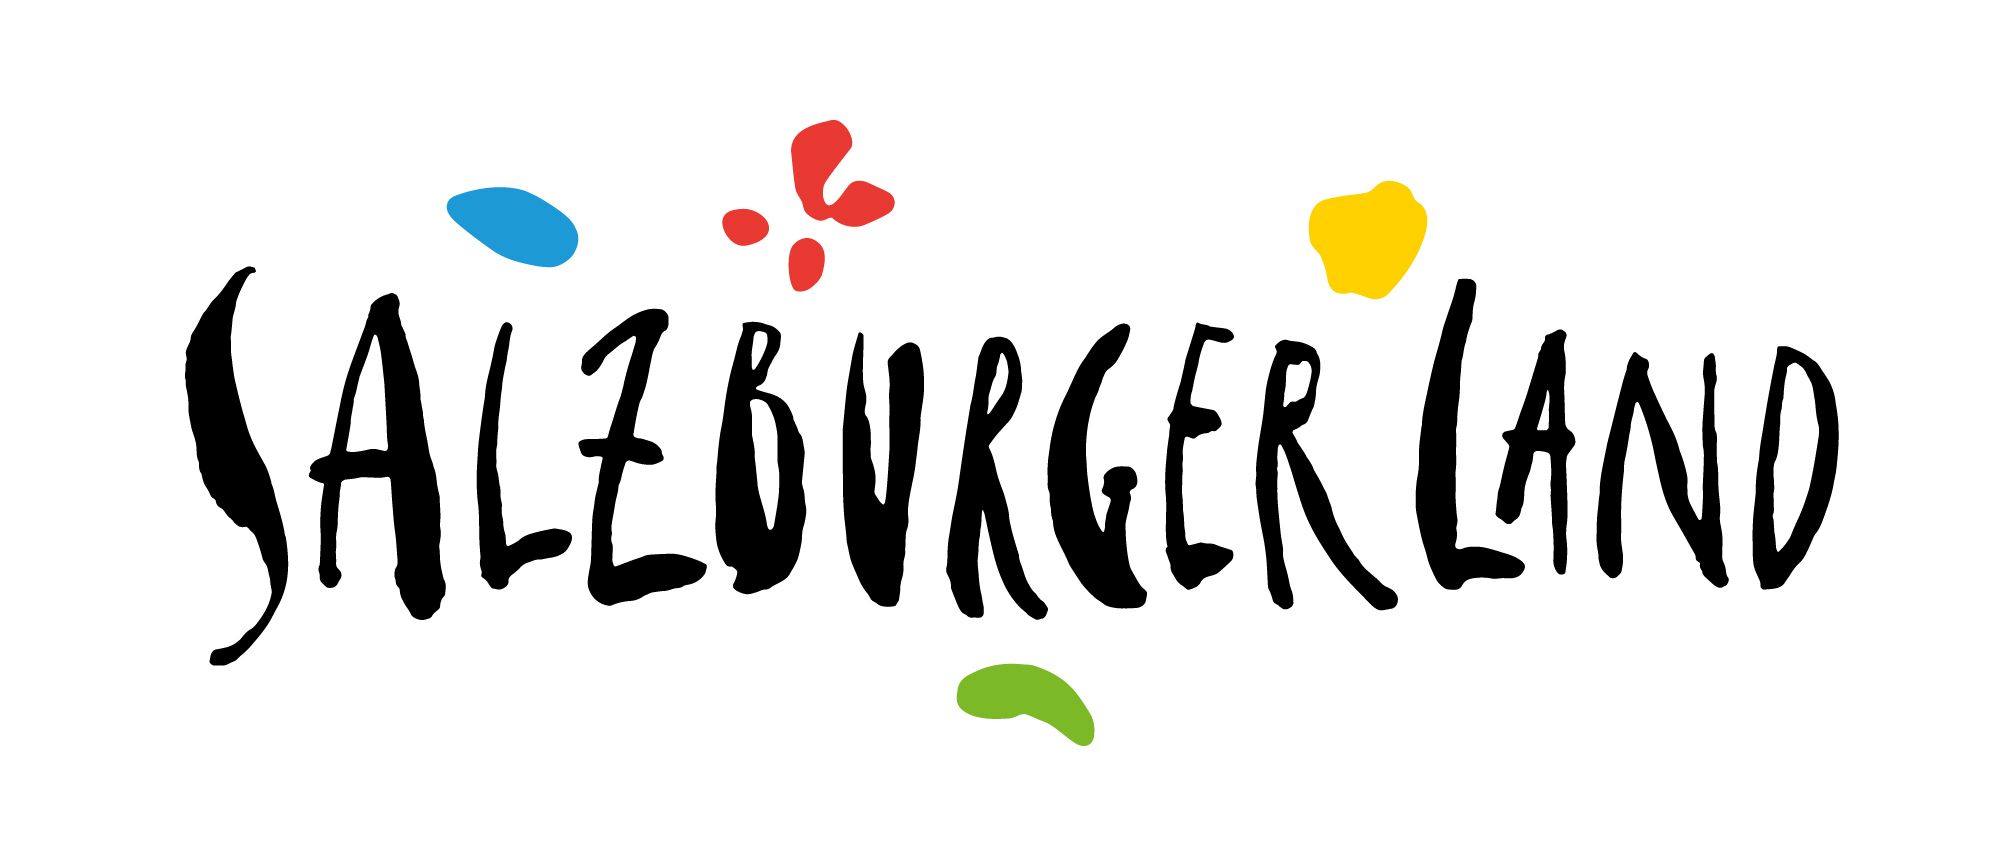 salzburgerland-logo.jpg